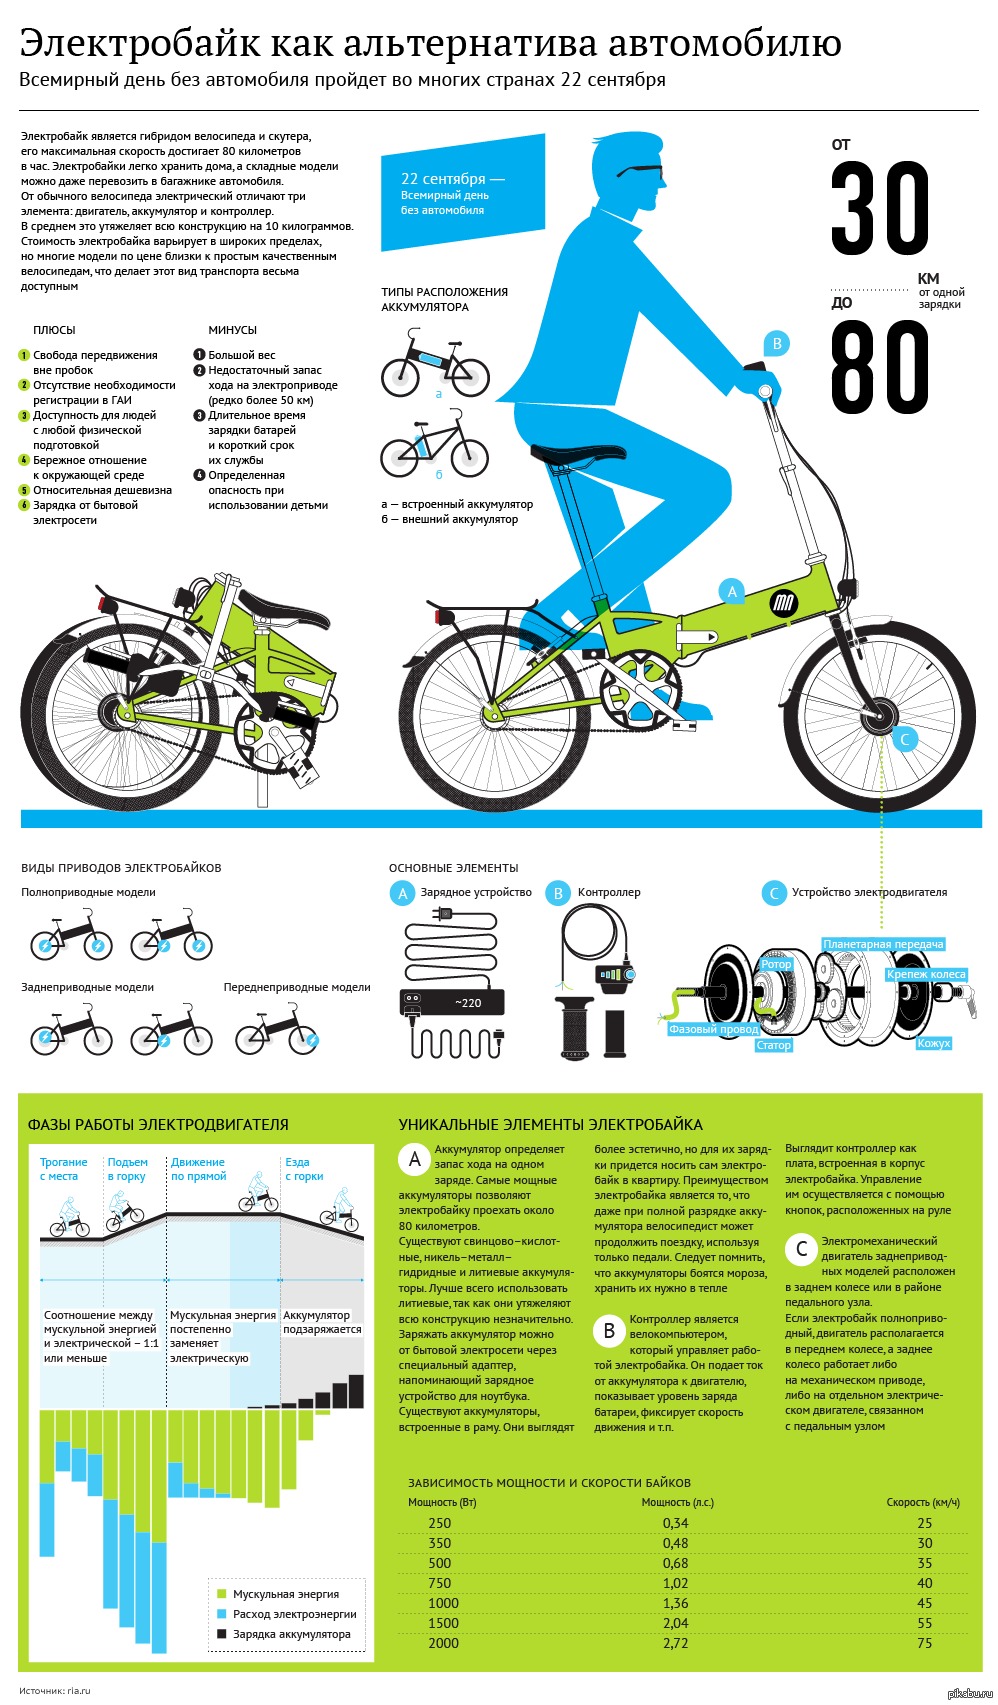 Велоспорт плюсы и минусы: Езда на велосипеде — плюсы и минусы для человека